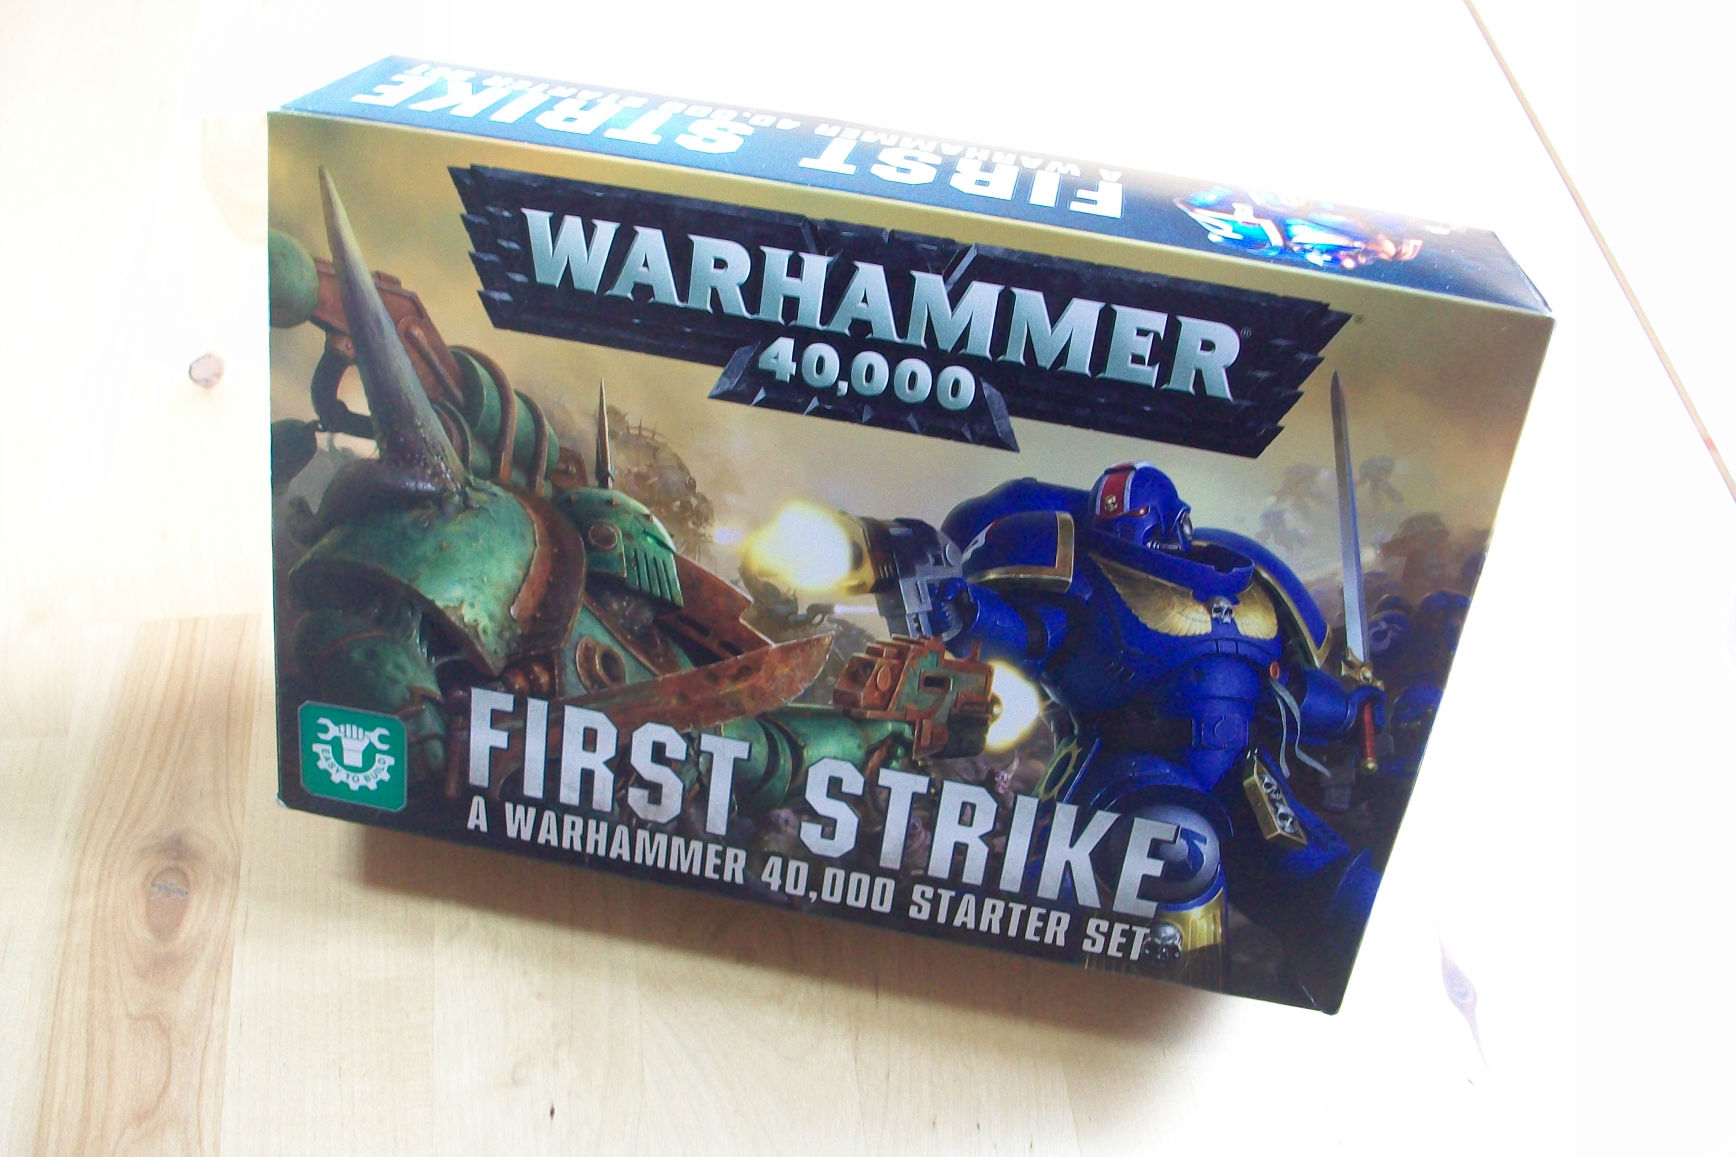 The Best Warhammer 40,000 Starter Sets